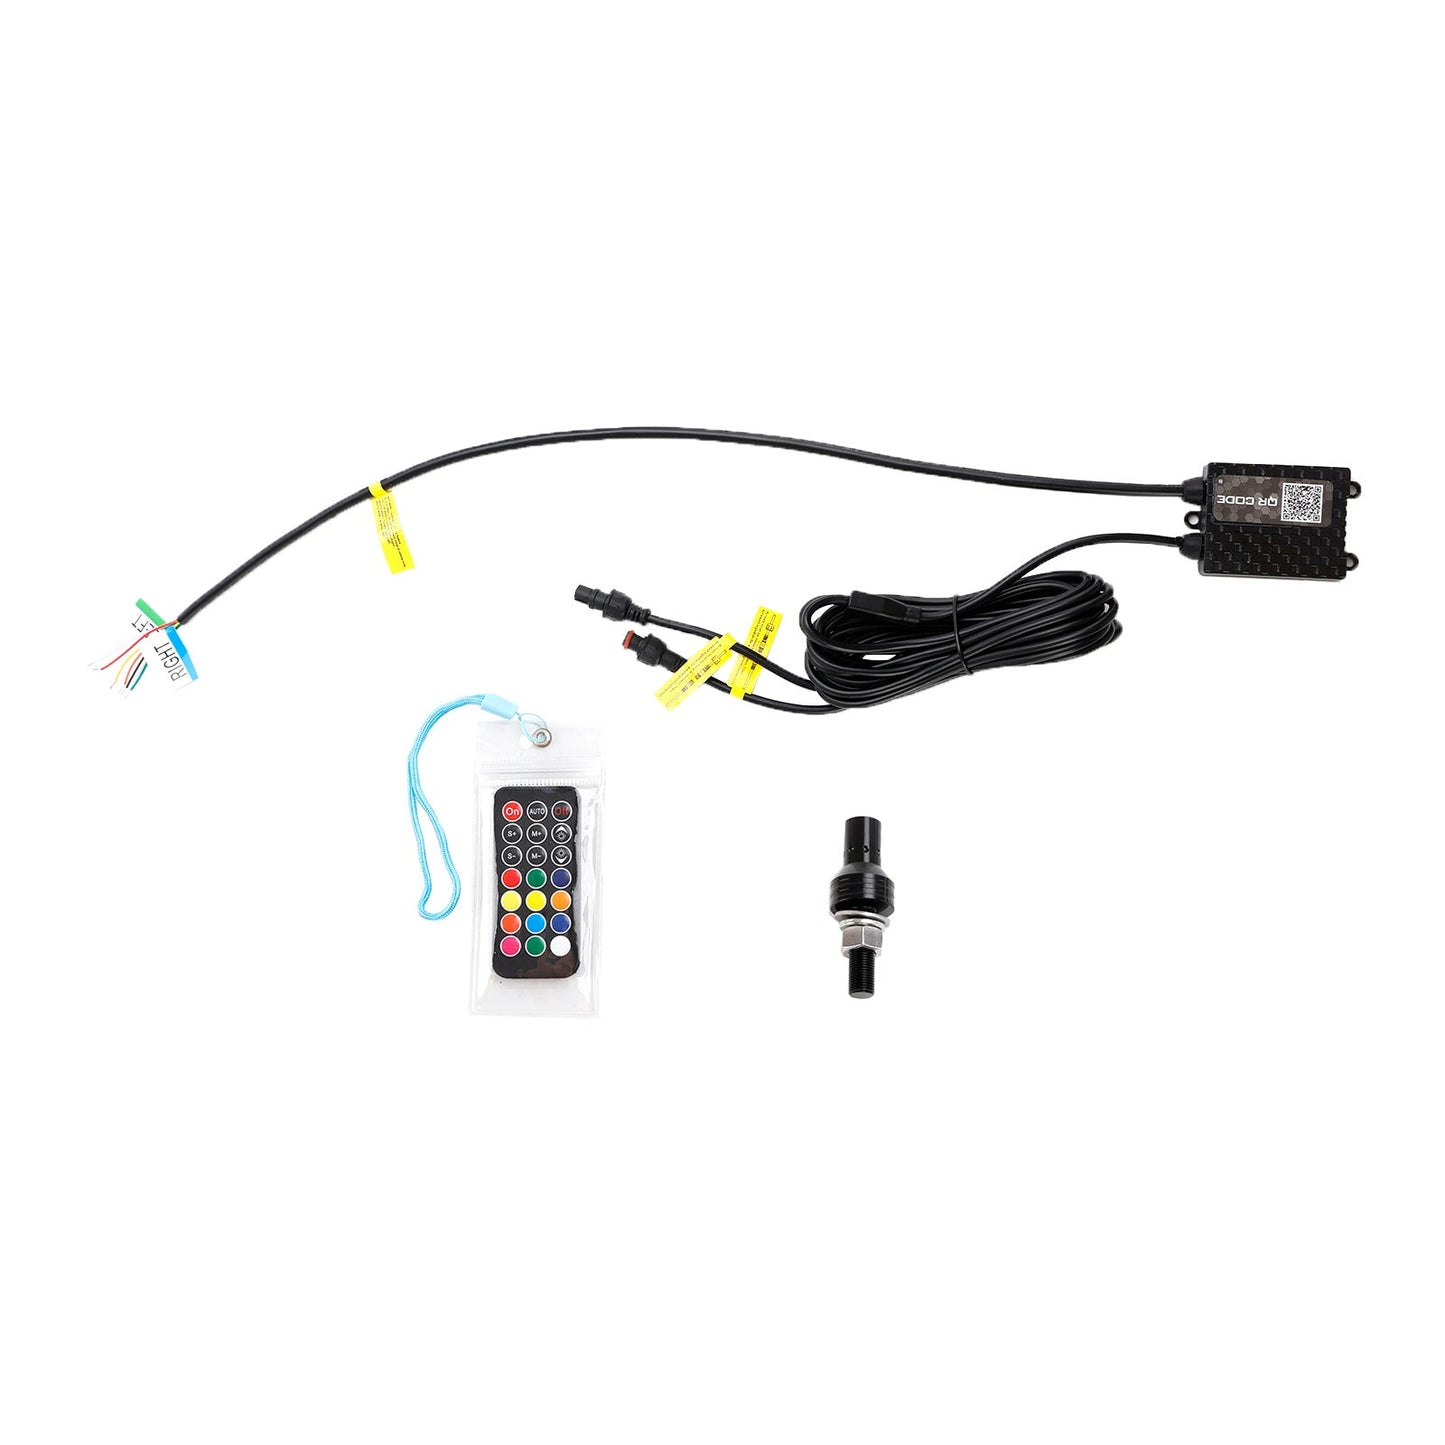 5ft RGB LED APP Whip Lights Antenna W/ Flag Remote Control For Polaris UTV ATV